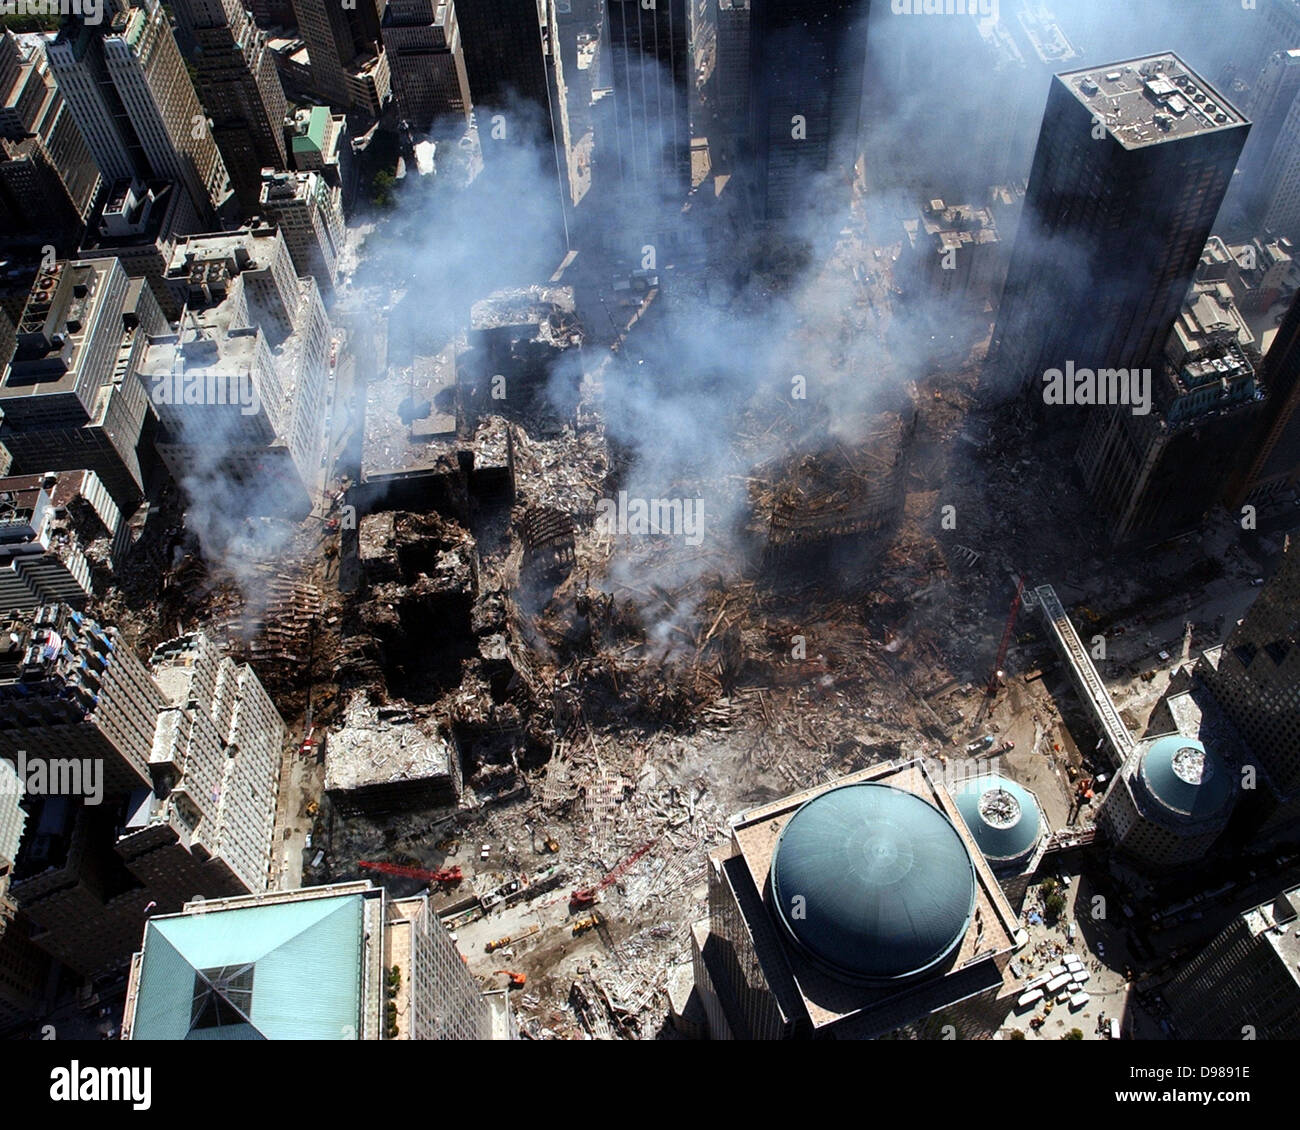 Ground Zero, Nueva York, N.Y. (Sept. 17, 2001) -- una vista aérea muestra sólo una pequeña parte de la escena del crimen en el World Trade Center se derrumbaron tras el ataque terrorista del 11 de septiembre. Los edificios circundantes fueron gravemente dañadas por los escombros y la enorme fuerza de la caída de las torres gemelas. Esfuerzos de limpieza se prevé continuar durante meses. Foto de la Marina de EE.UU. Foto de stock